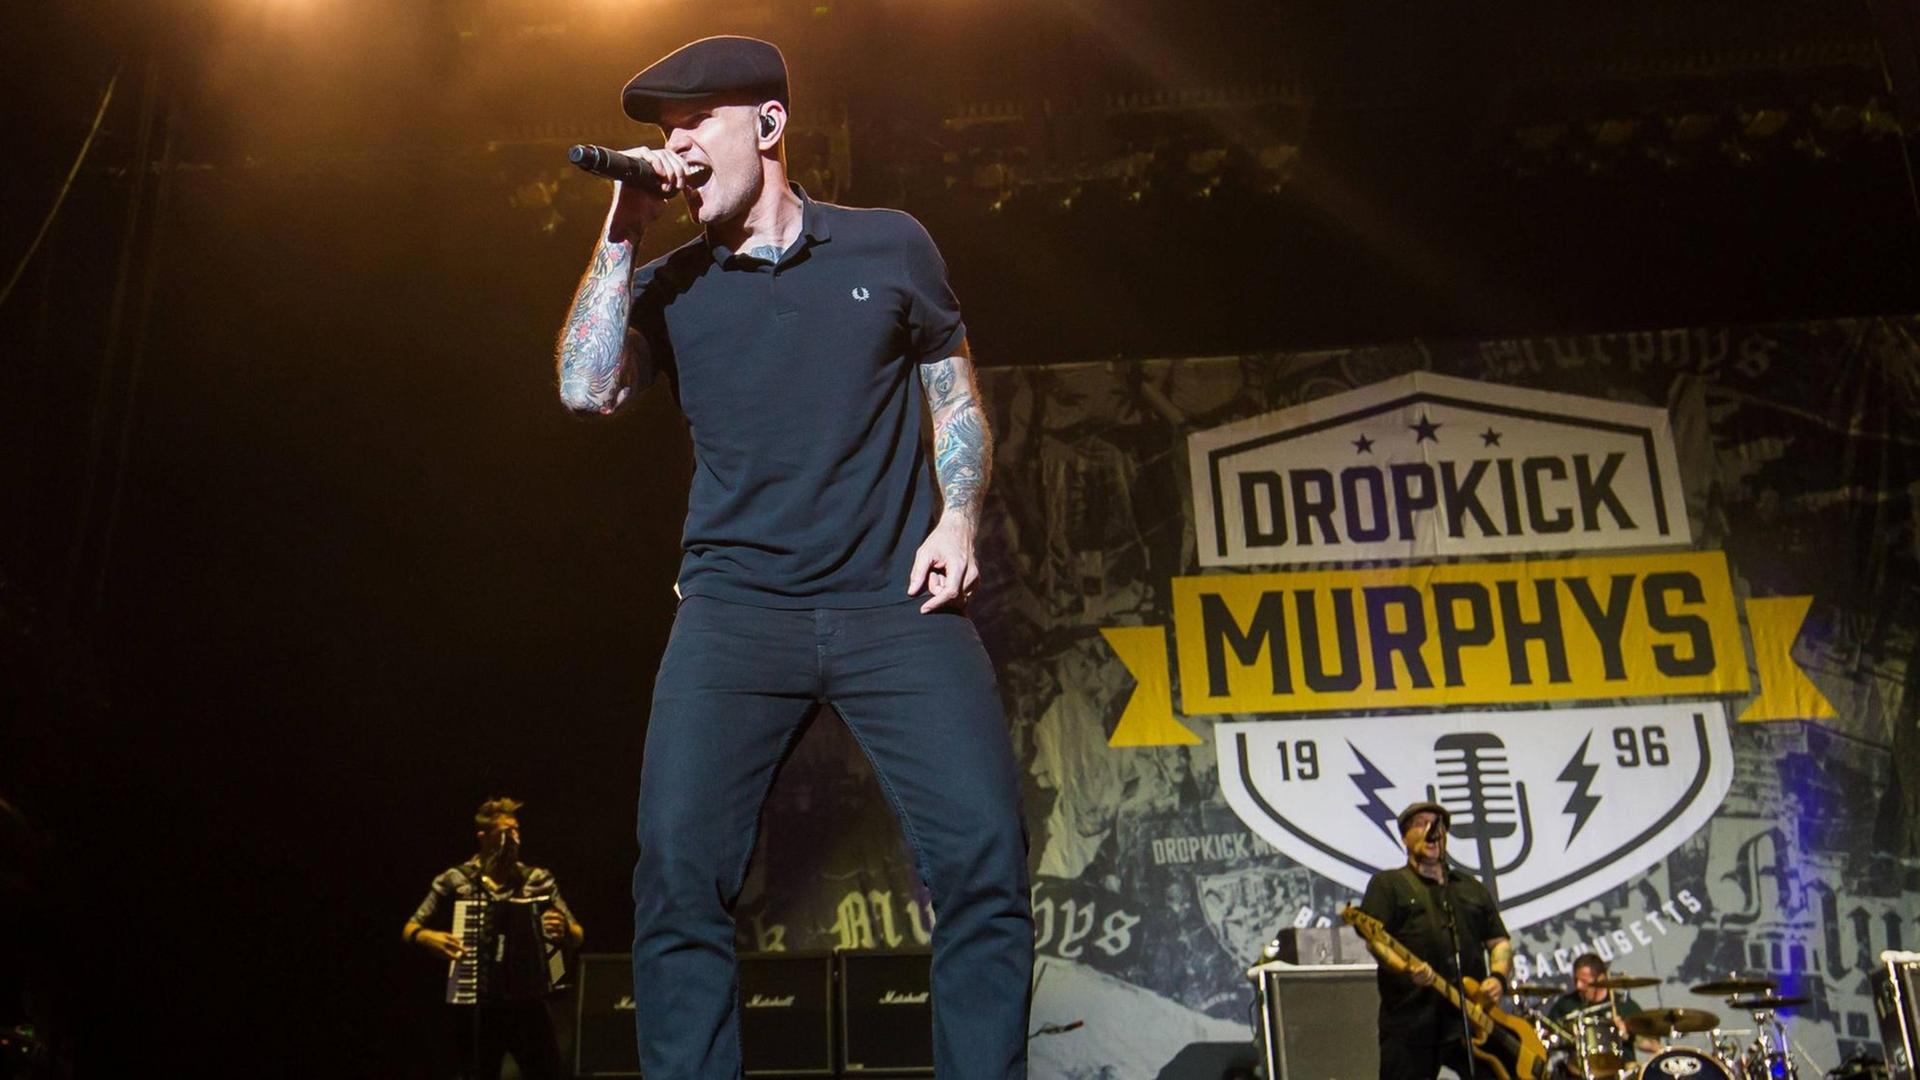 Die Band Dropkick Murphys steht am 24. Juni 2016 im Rahmen des Hurricane Festivals in Scheeßel auf der Bühne.